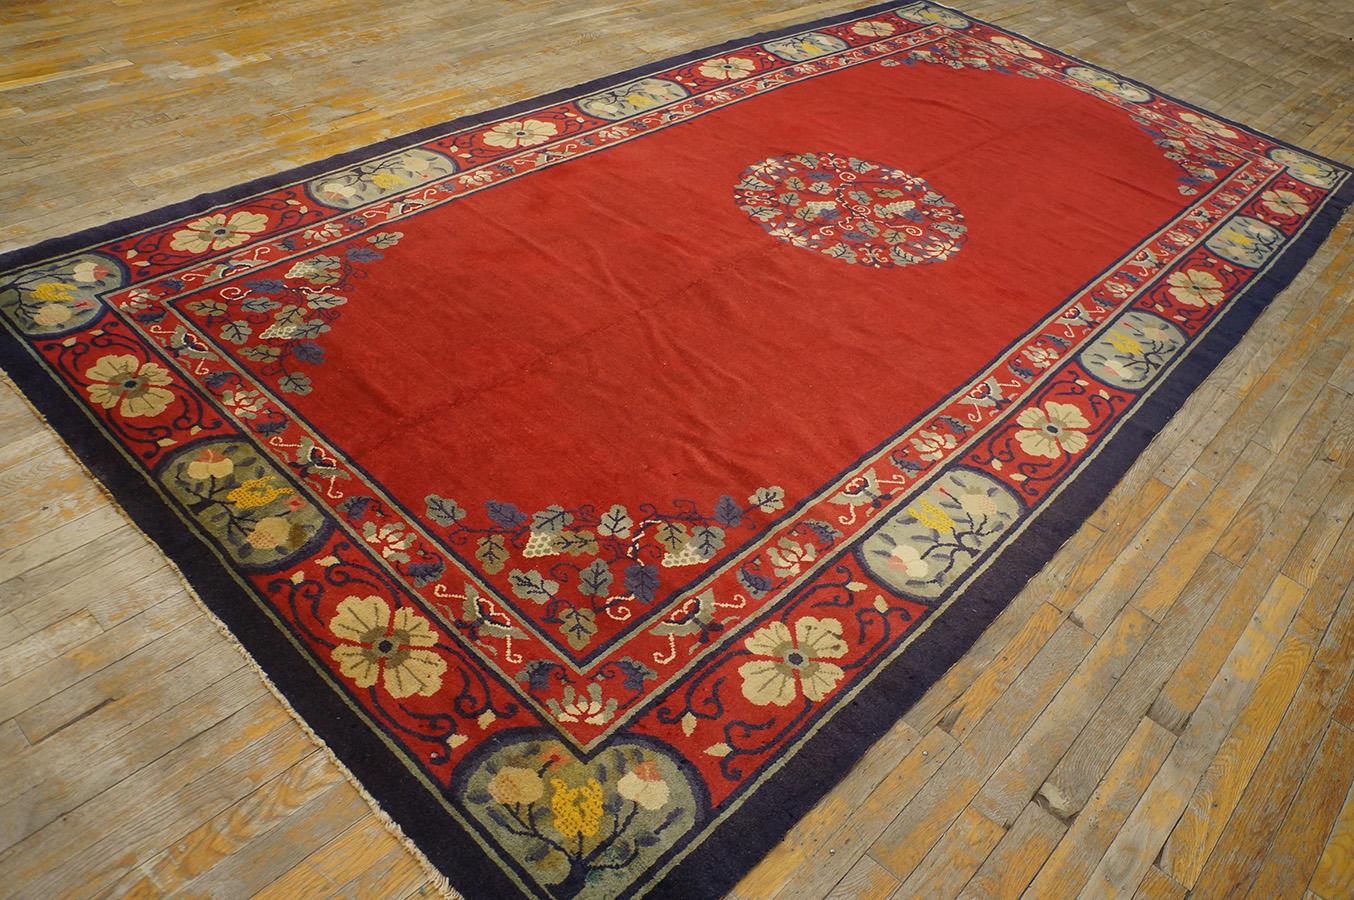 Antique Chinese Peking rug, size: 5' 0'' x 11' 8''.